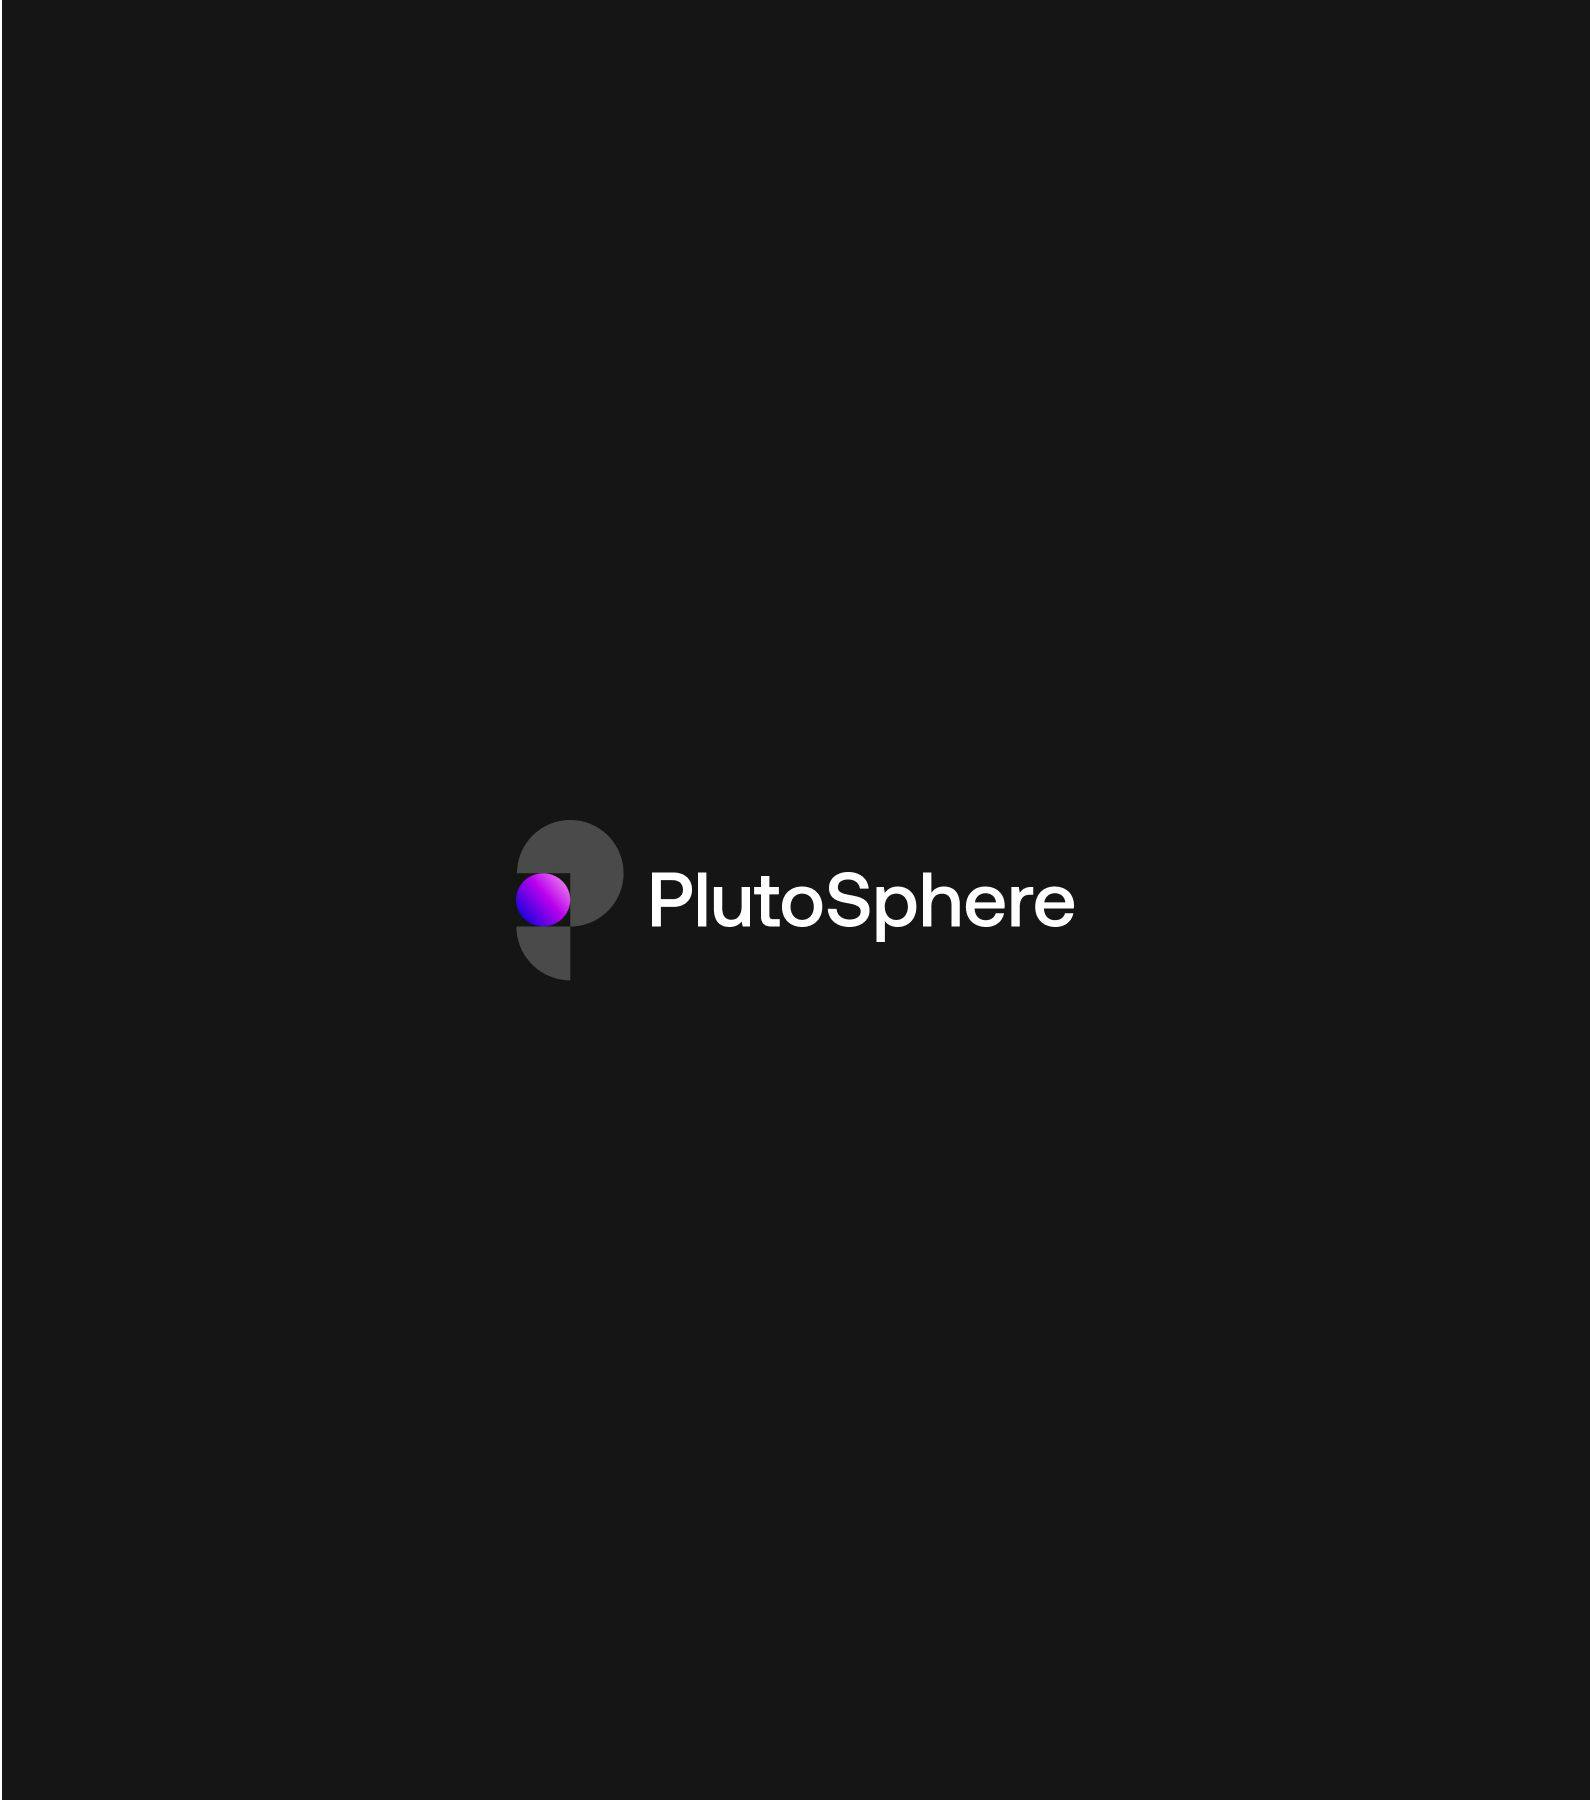 Plutosphere logo